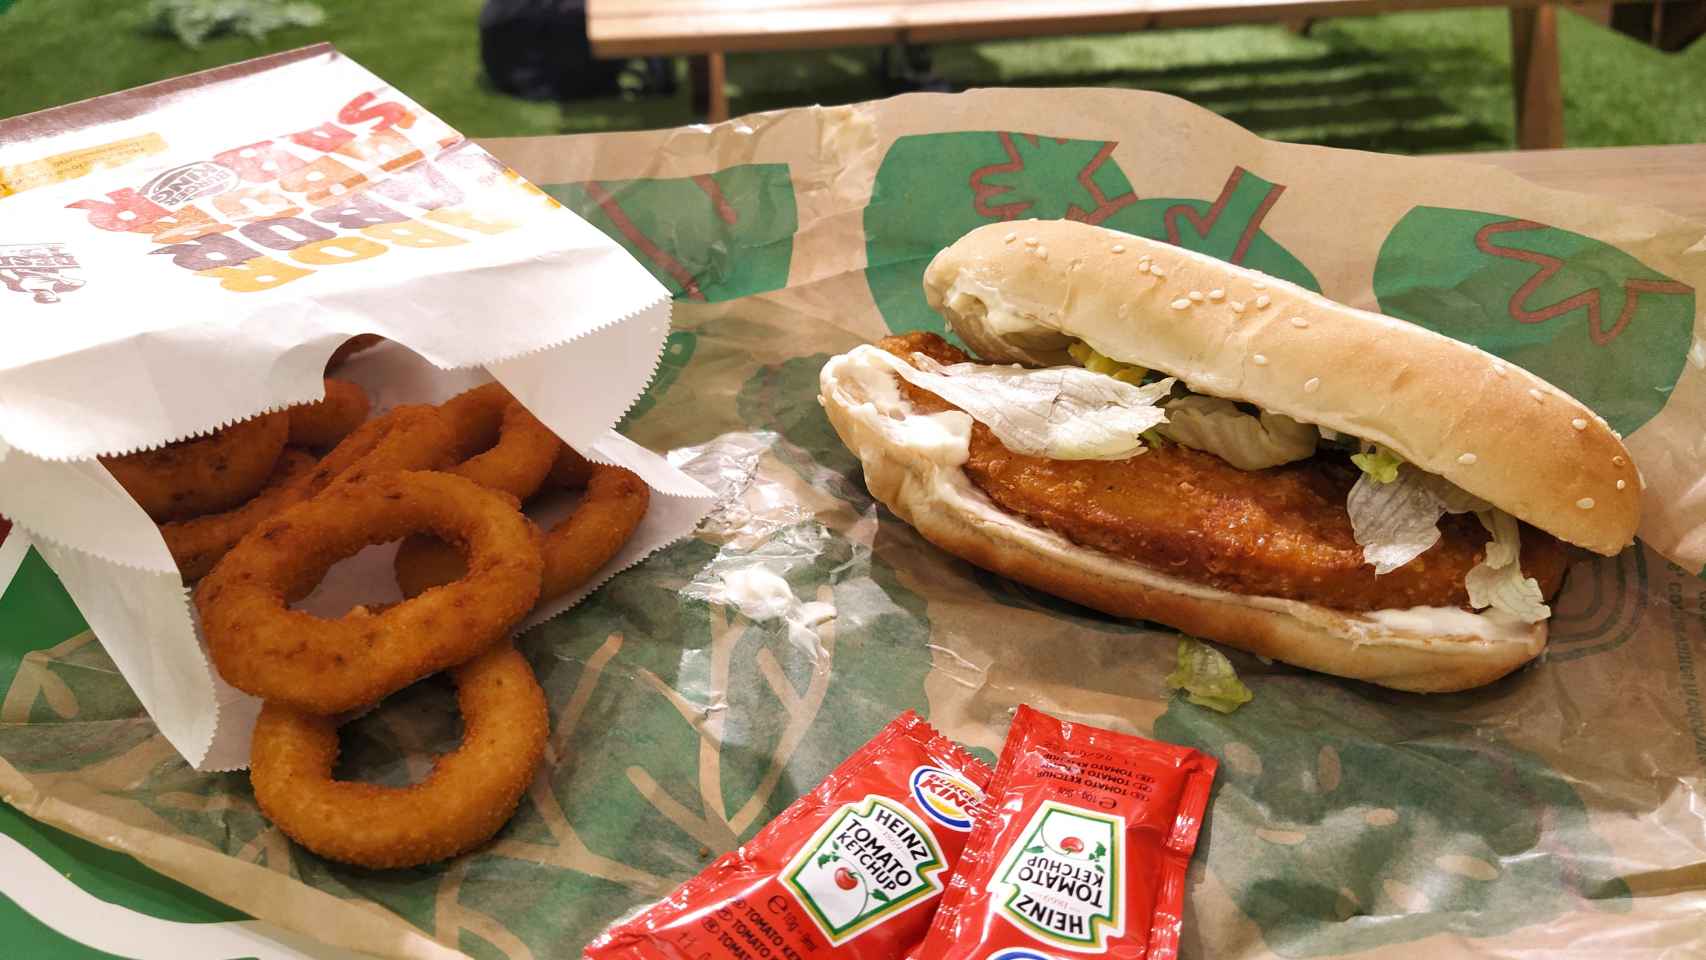 Los aritos de cebolla y la hamburguesa Long Vegetal de Burger King.